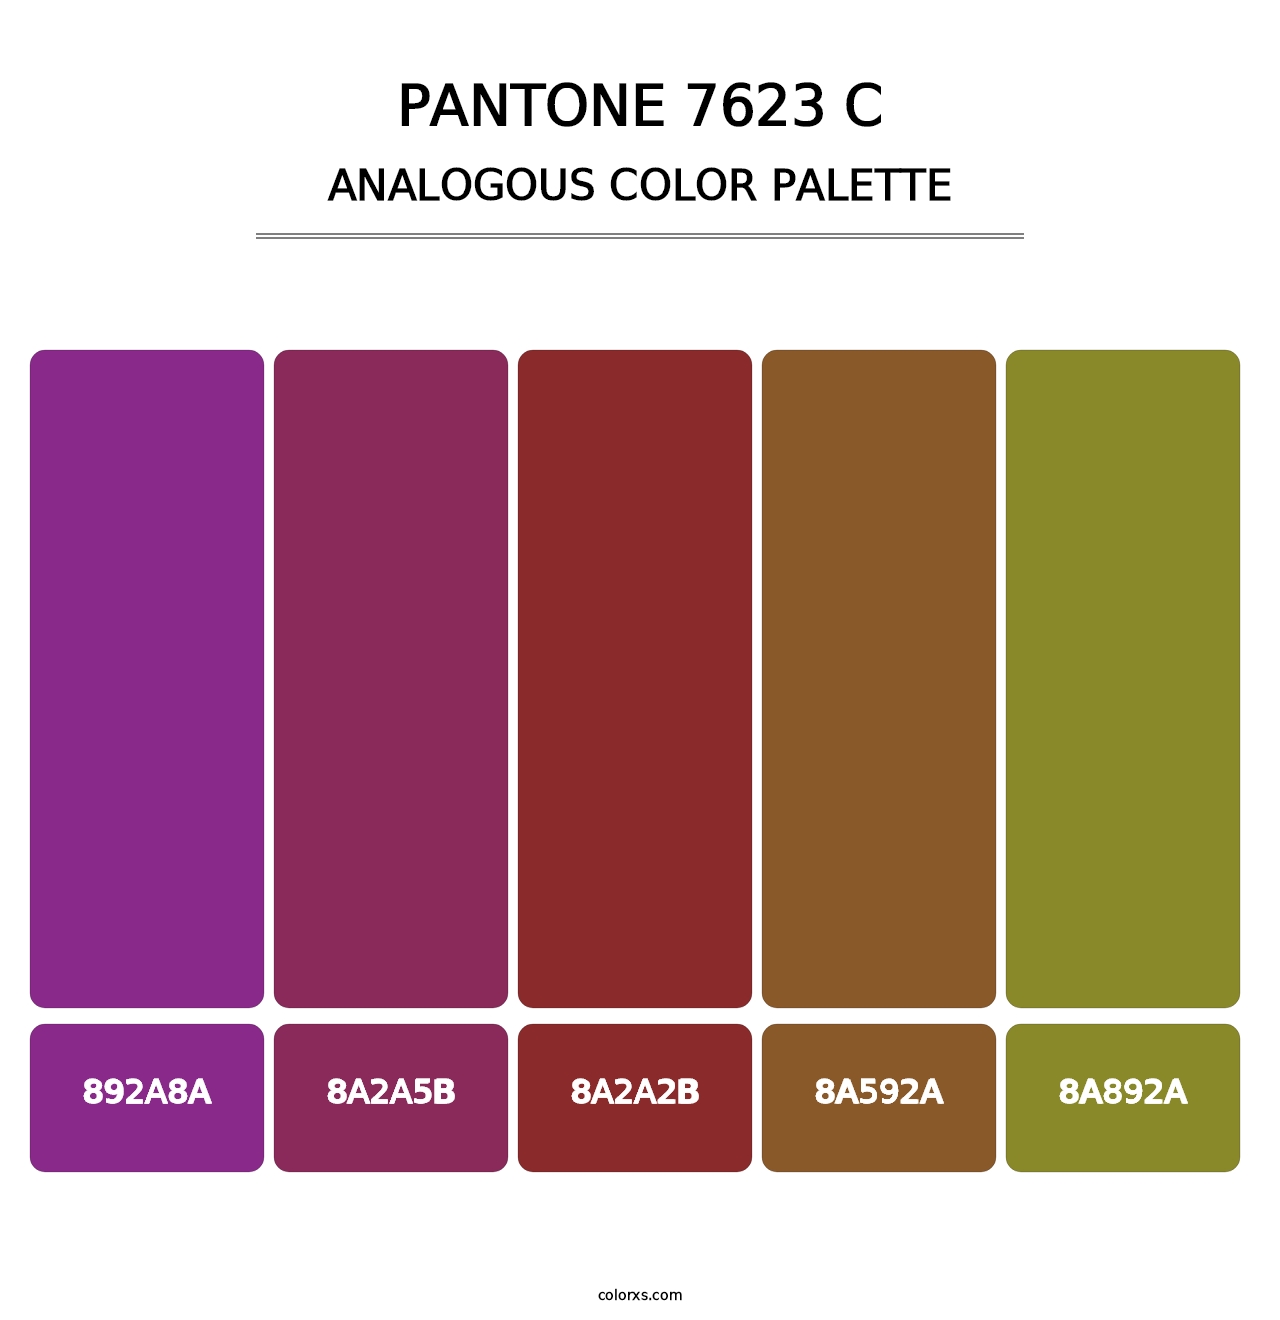 PANTONE 7623 C - Analogous Color Palette